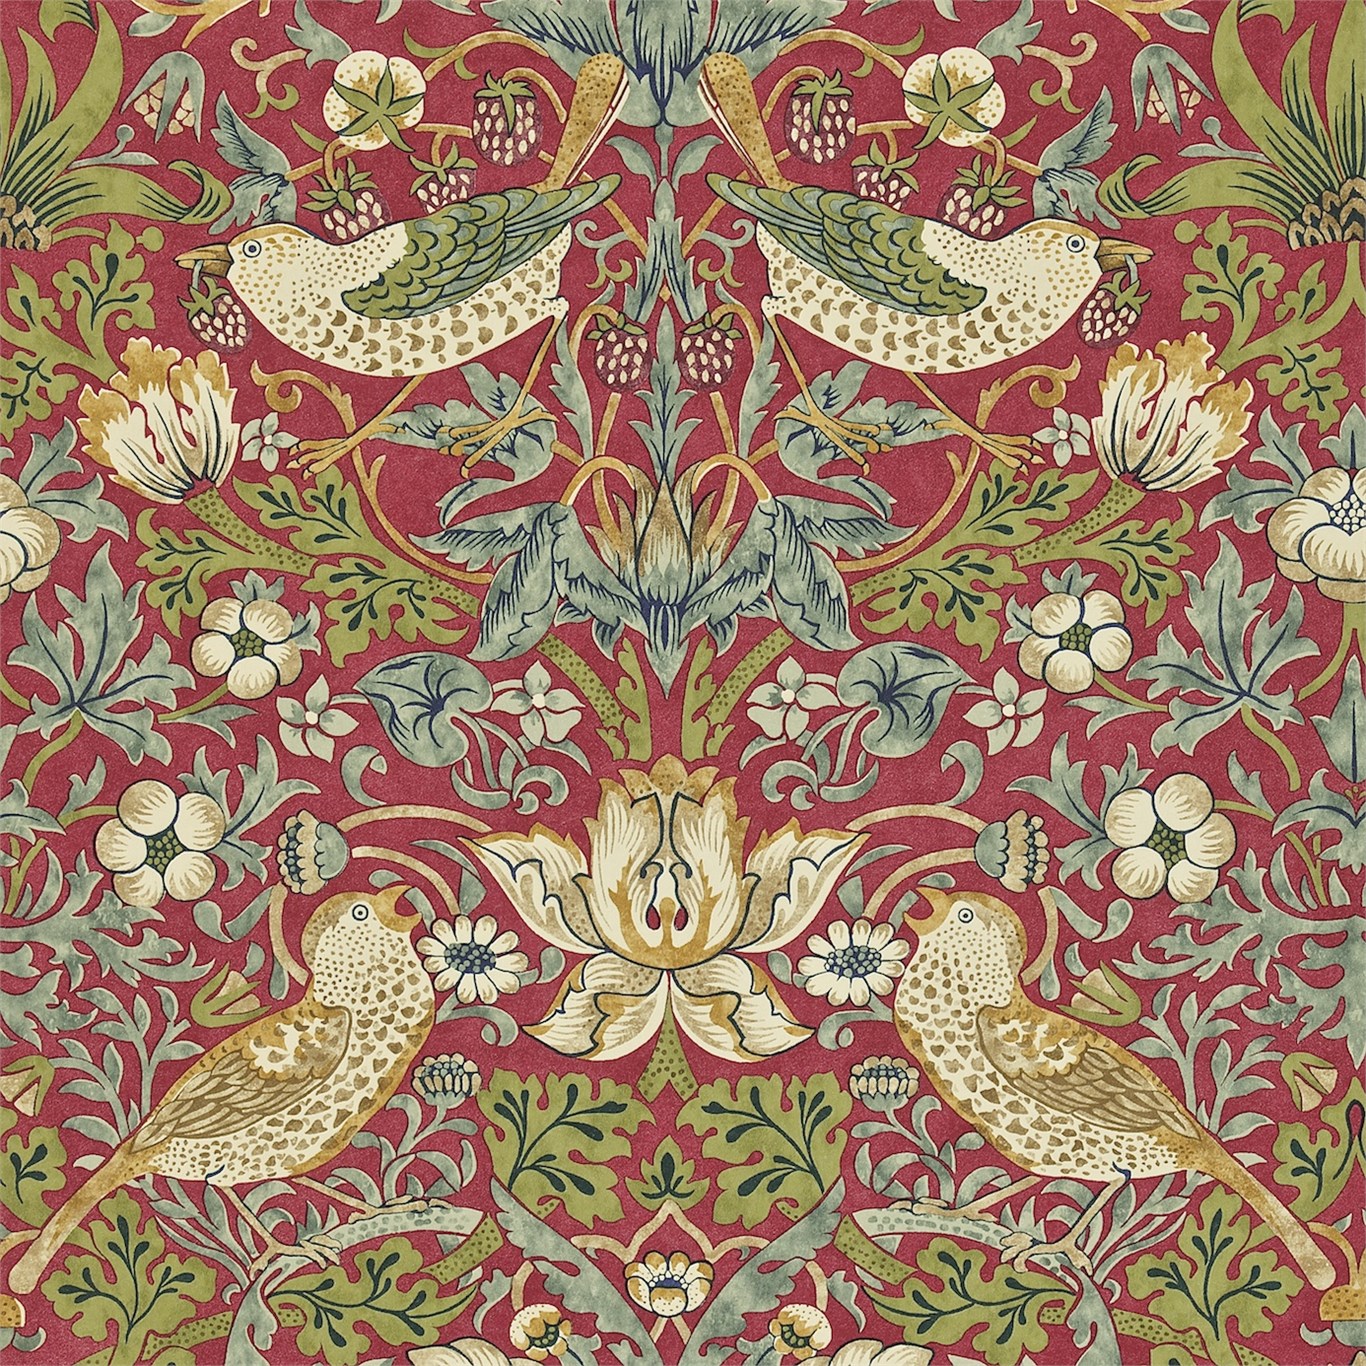 Original Morris Co   Arts and crafts fabrics and wallpaper designs